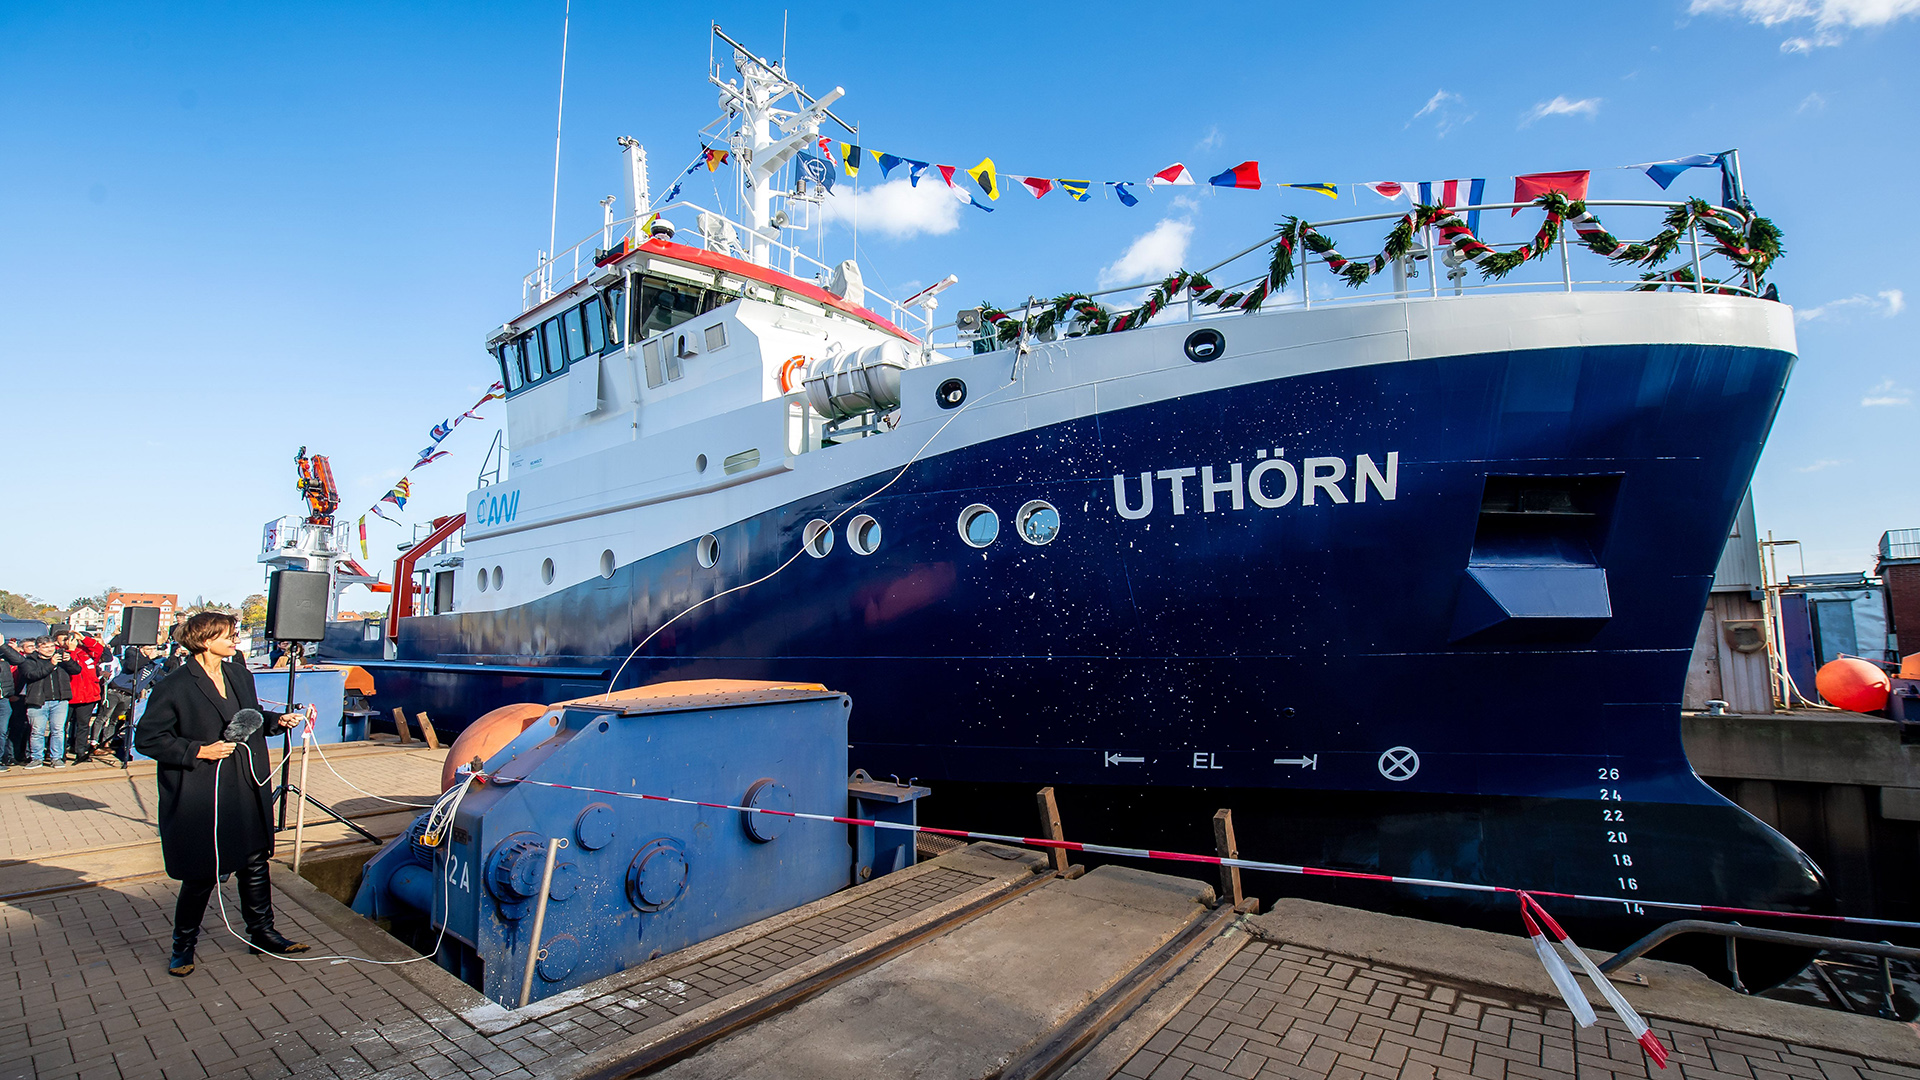 Das neue Forschungsschiff "Uthörn" wird von Bettina Stark-Watzinger in Berne getauft, NIedersachsen. | dpa